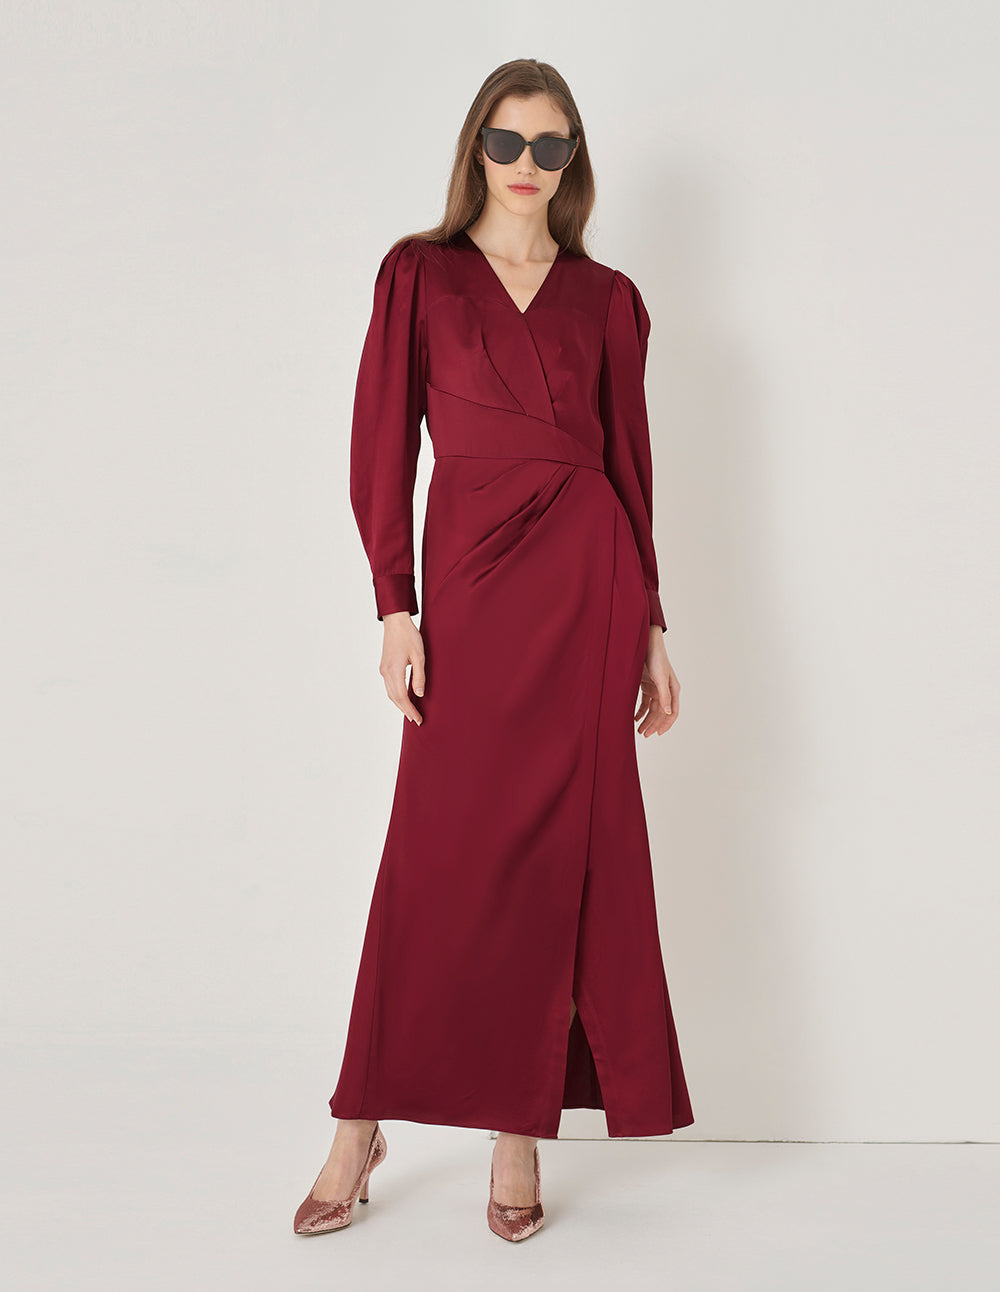 MARYLING Women's Burgundy V-Neck Fishtail Slit Long-Sleeved Dress